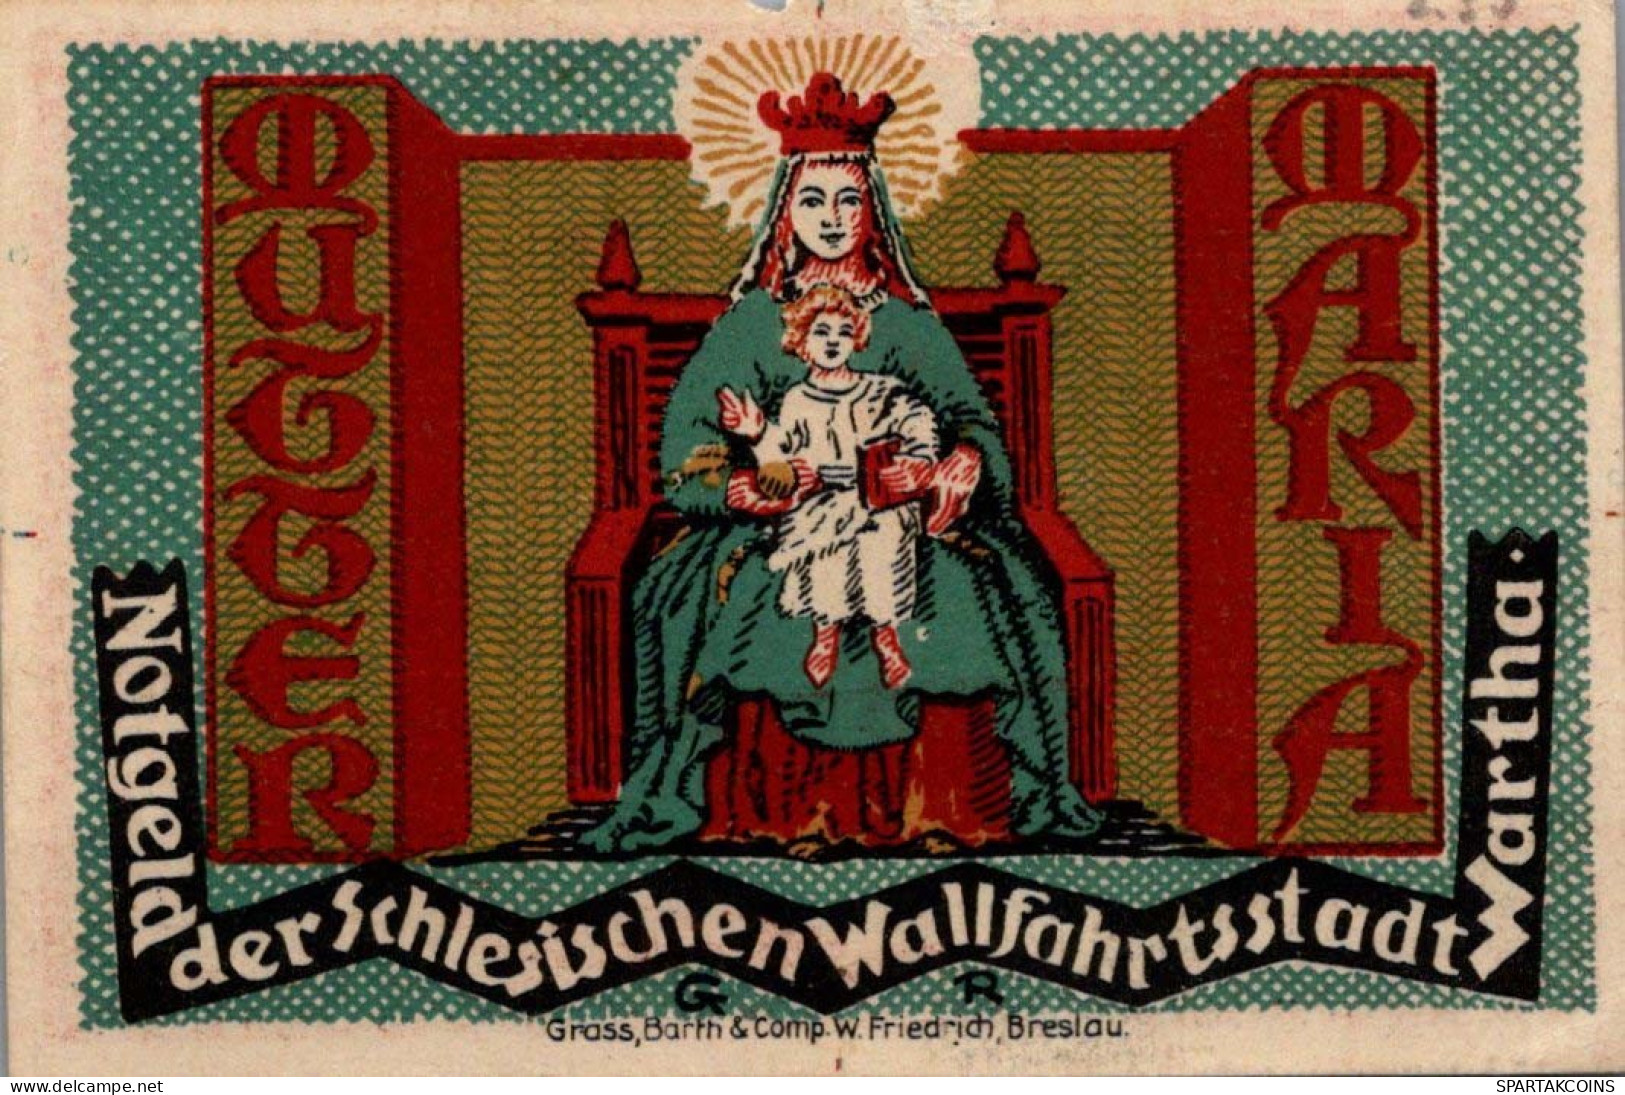 50 PFENNIG 1921 Stadt Wartha DEUTSCHLAND Notgeld Papiergeld Banknote #PG054 - Lokale Ausgaben